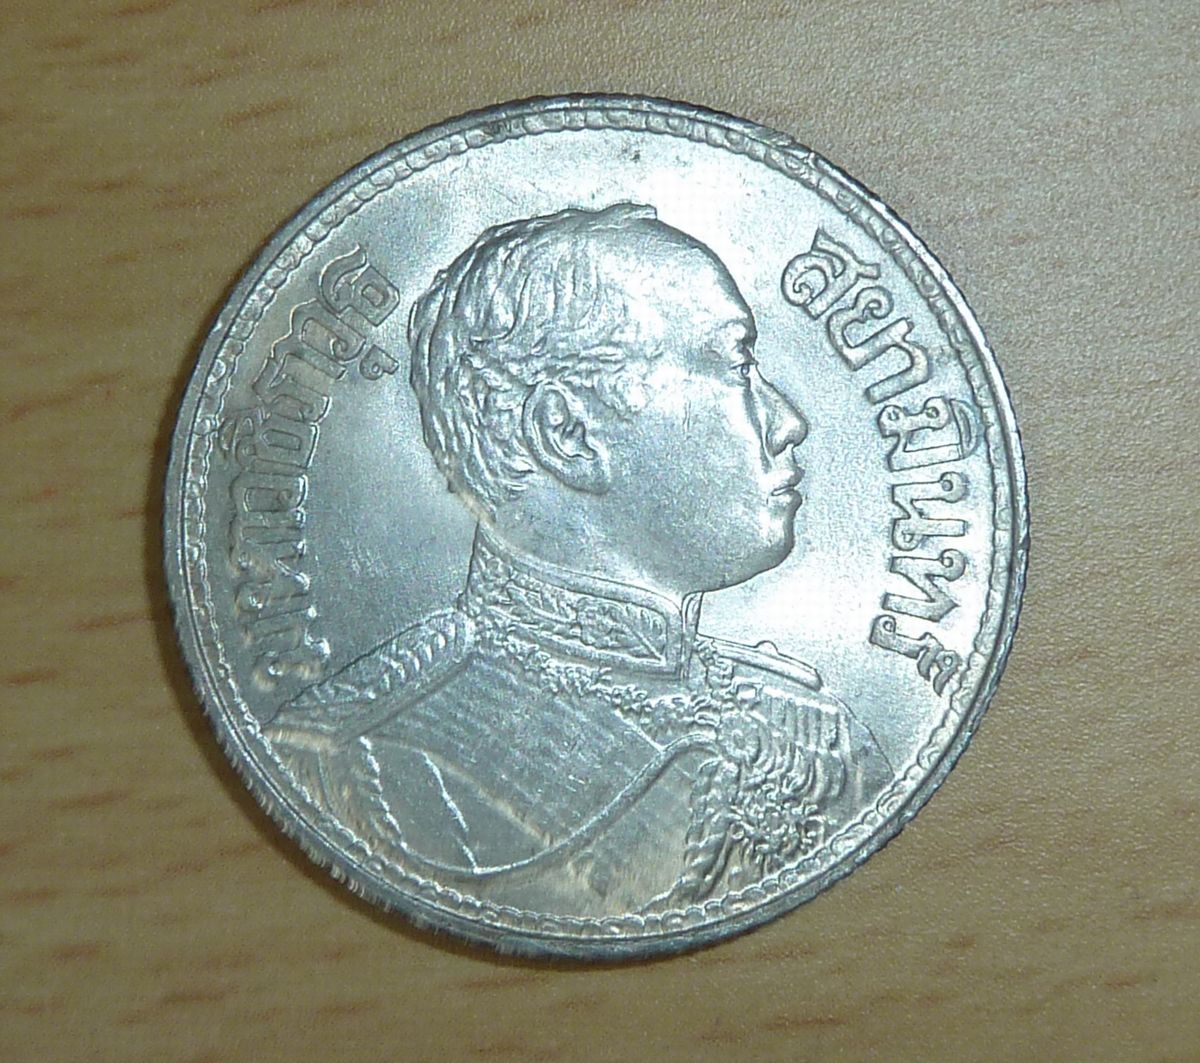 タイ王国 ラーマ6世像 1バーツ銀貨 1917年: 俺のコインコレクションが